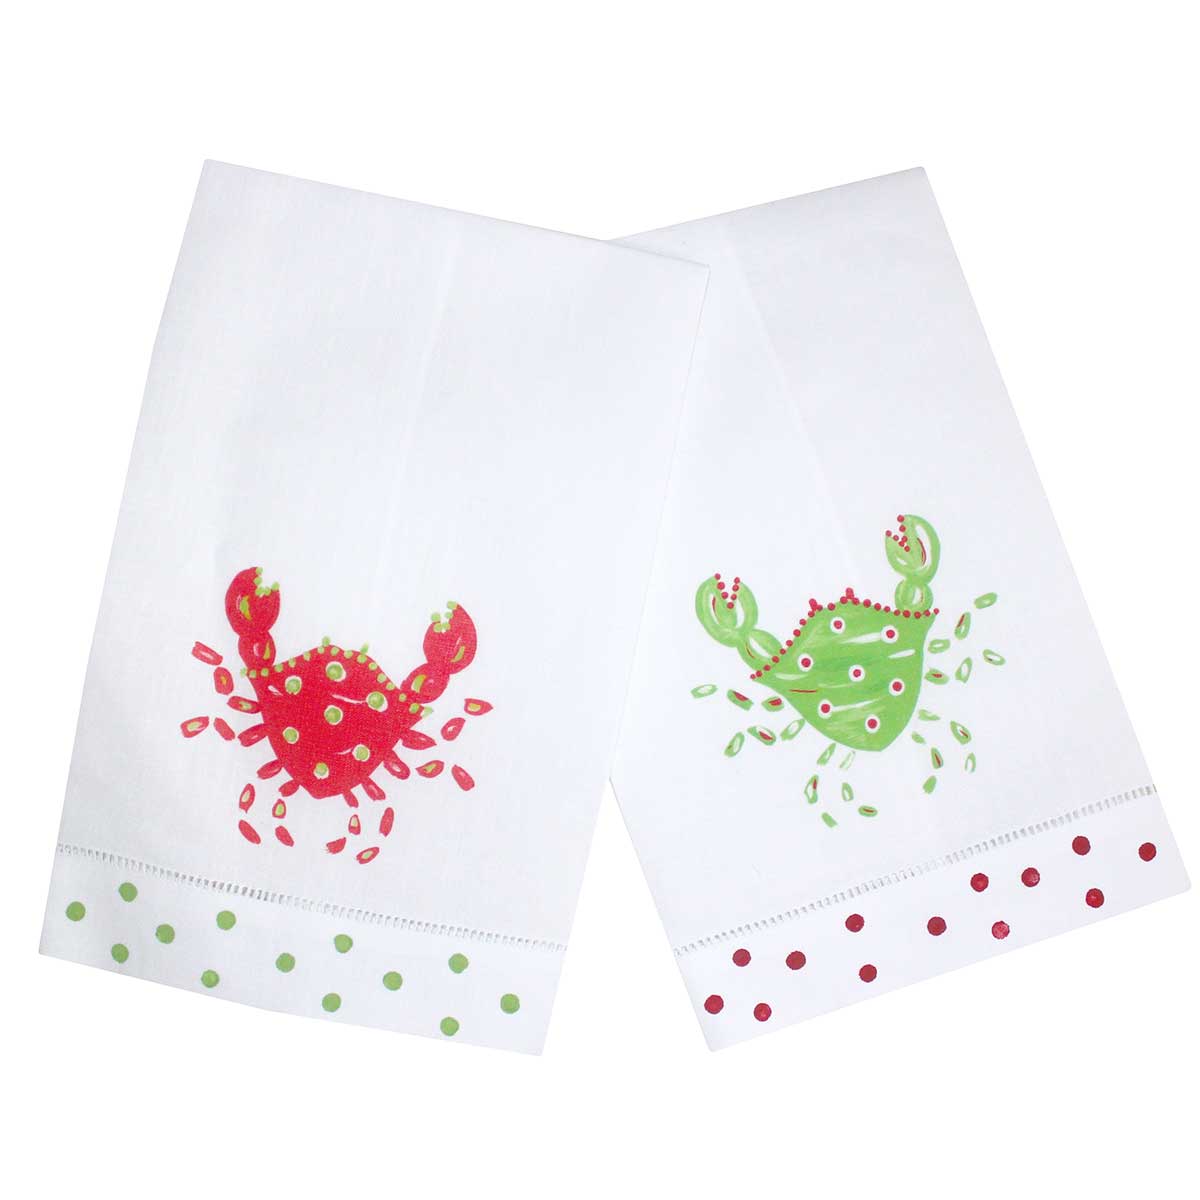 Coastal Christmas Crab Linen Guest Towels